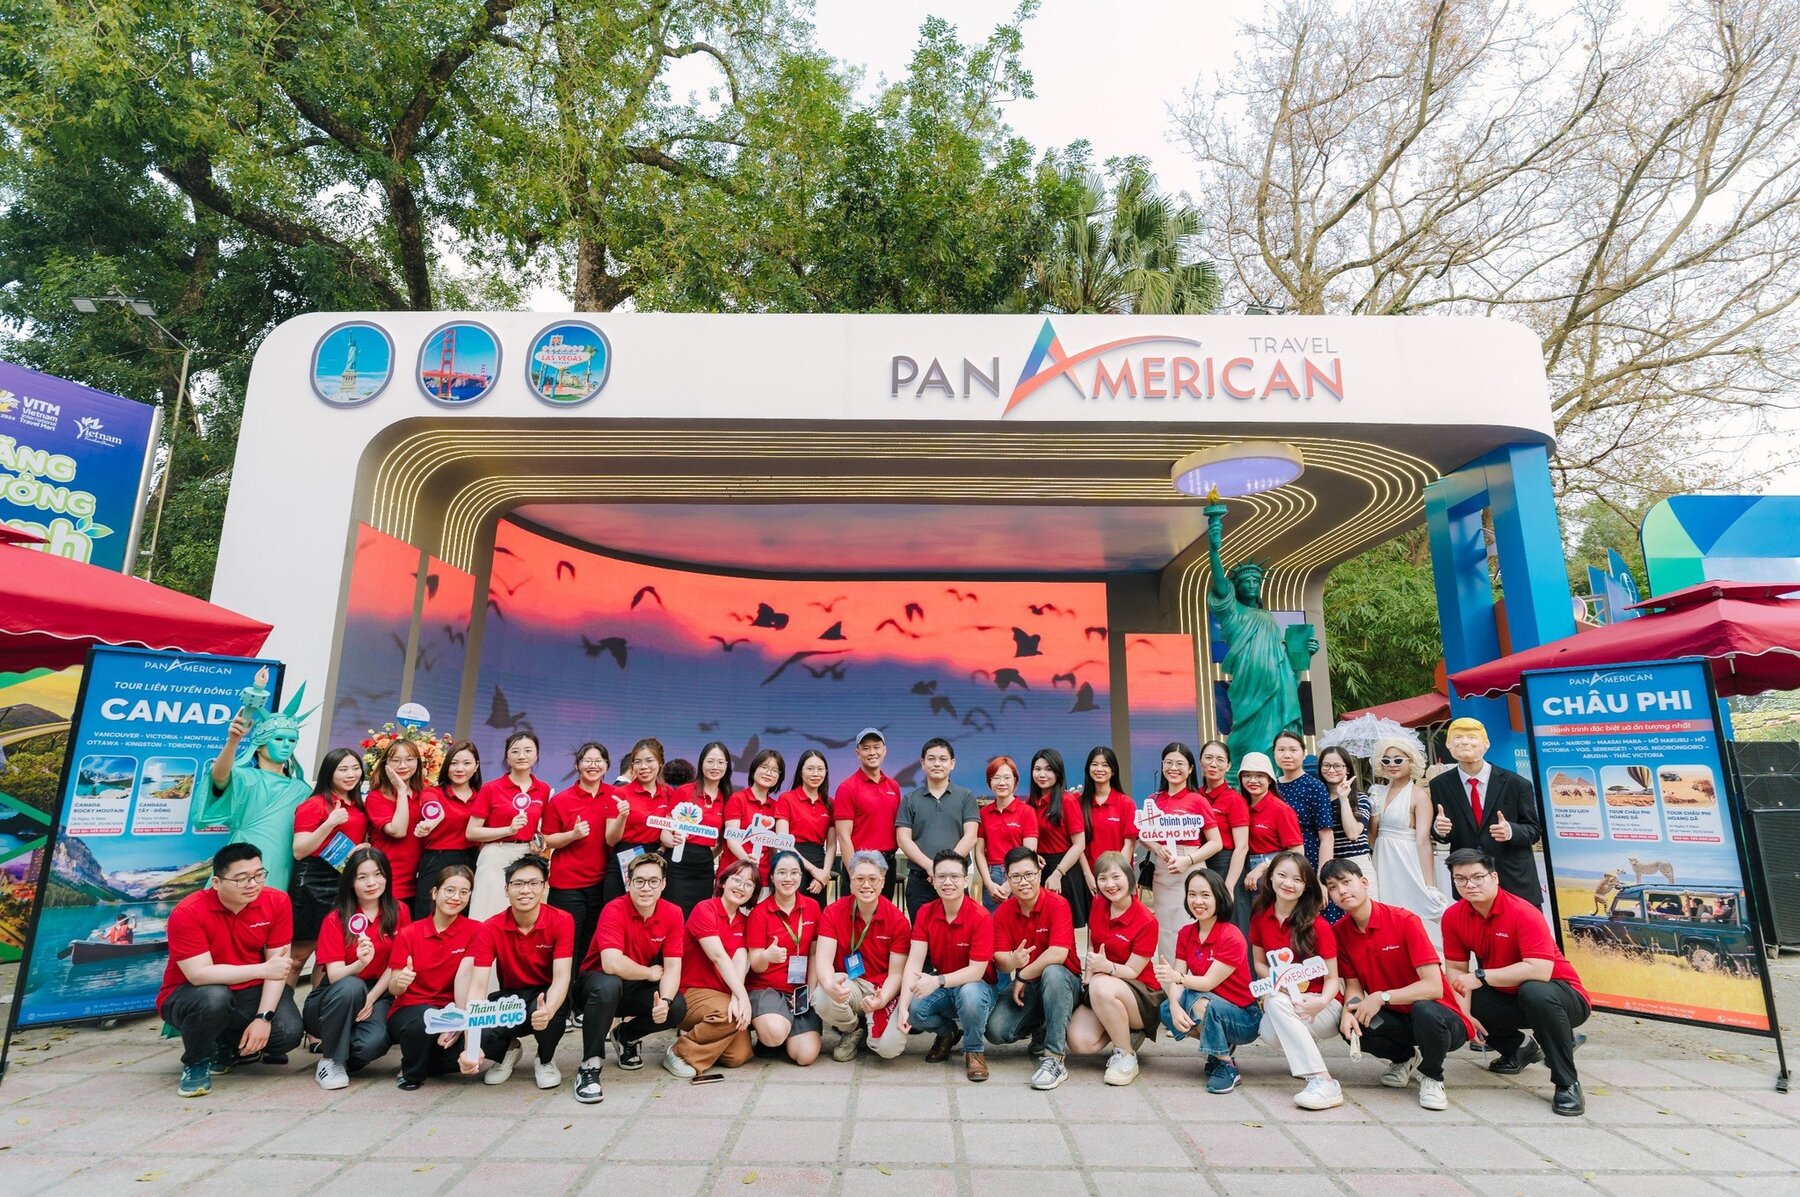 Đội ngũ Pan American Travel